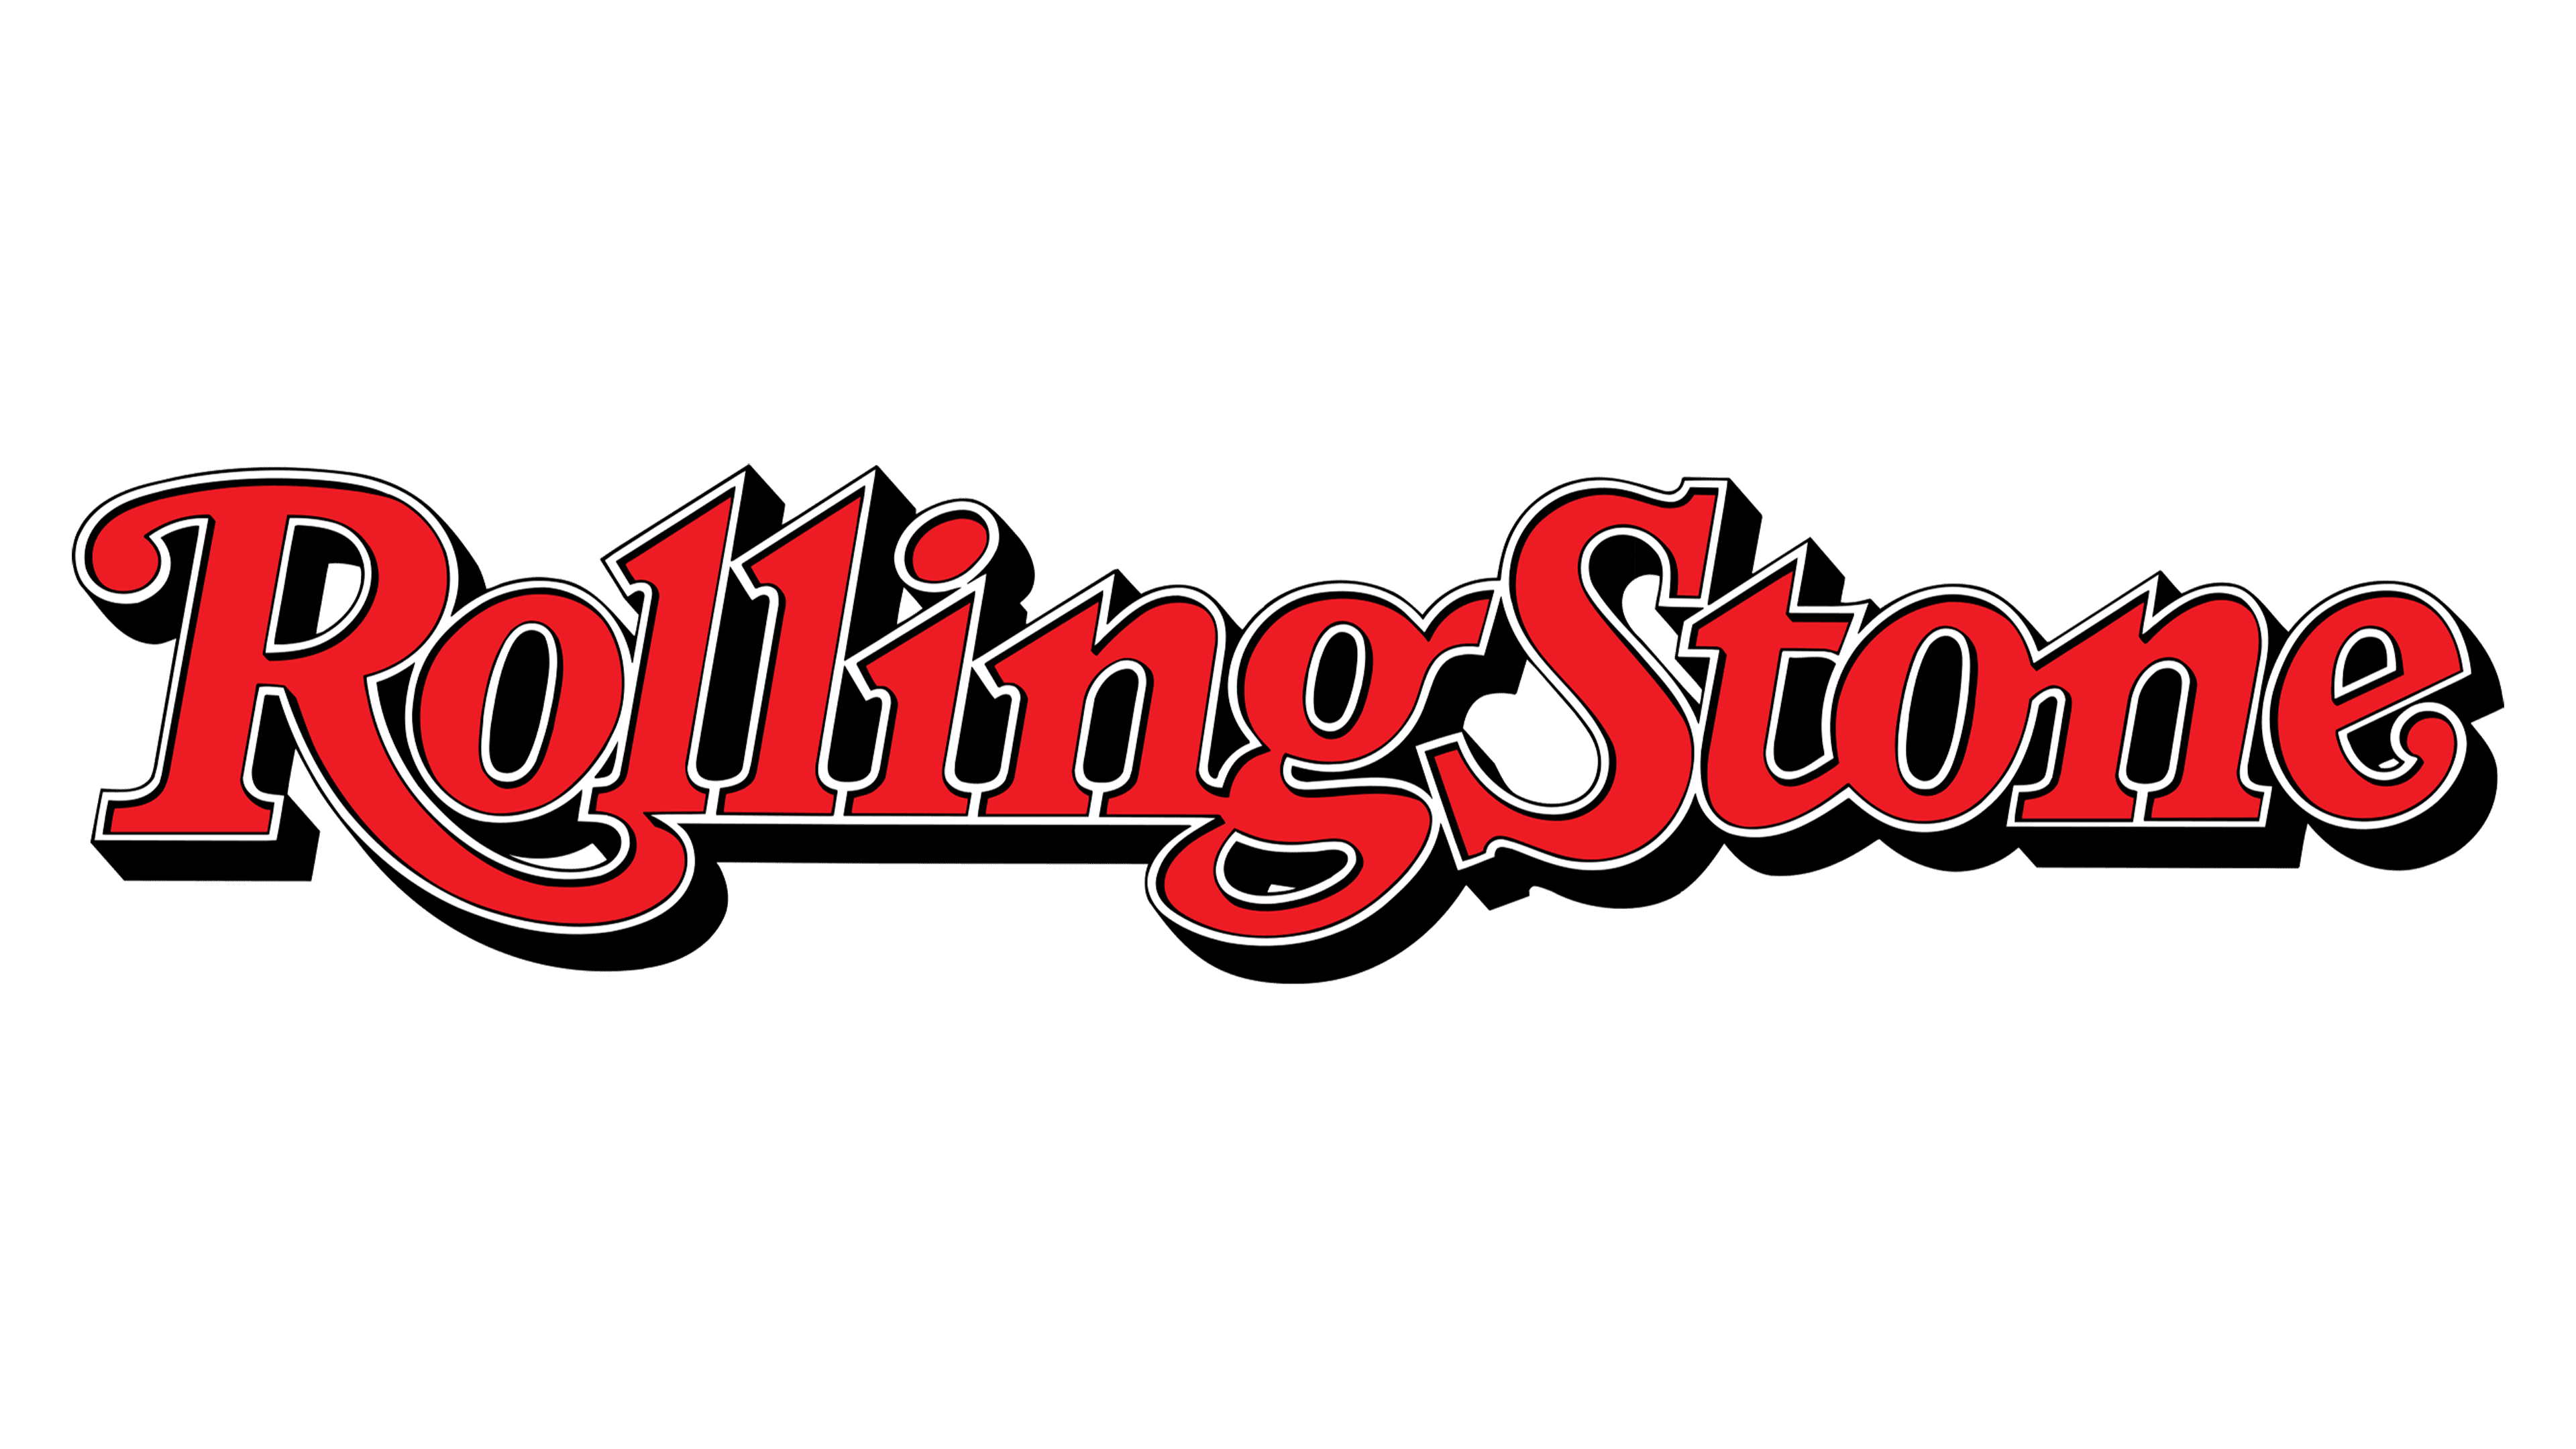 LâMO Footwear Featured in Rolling Stone!